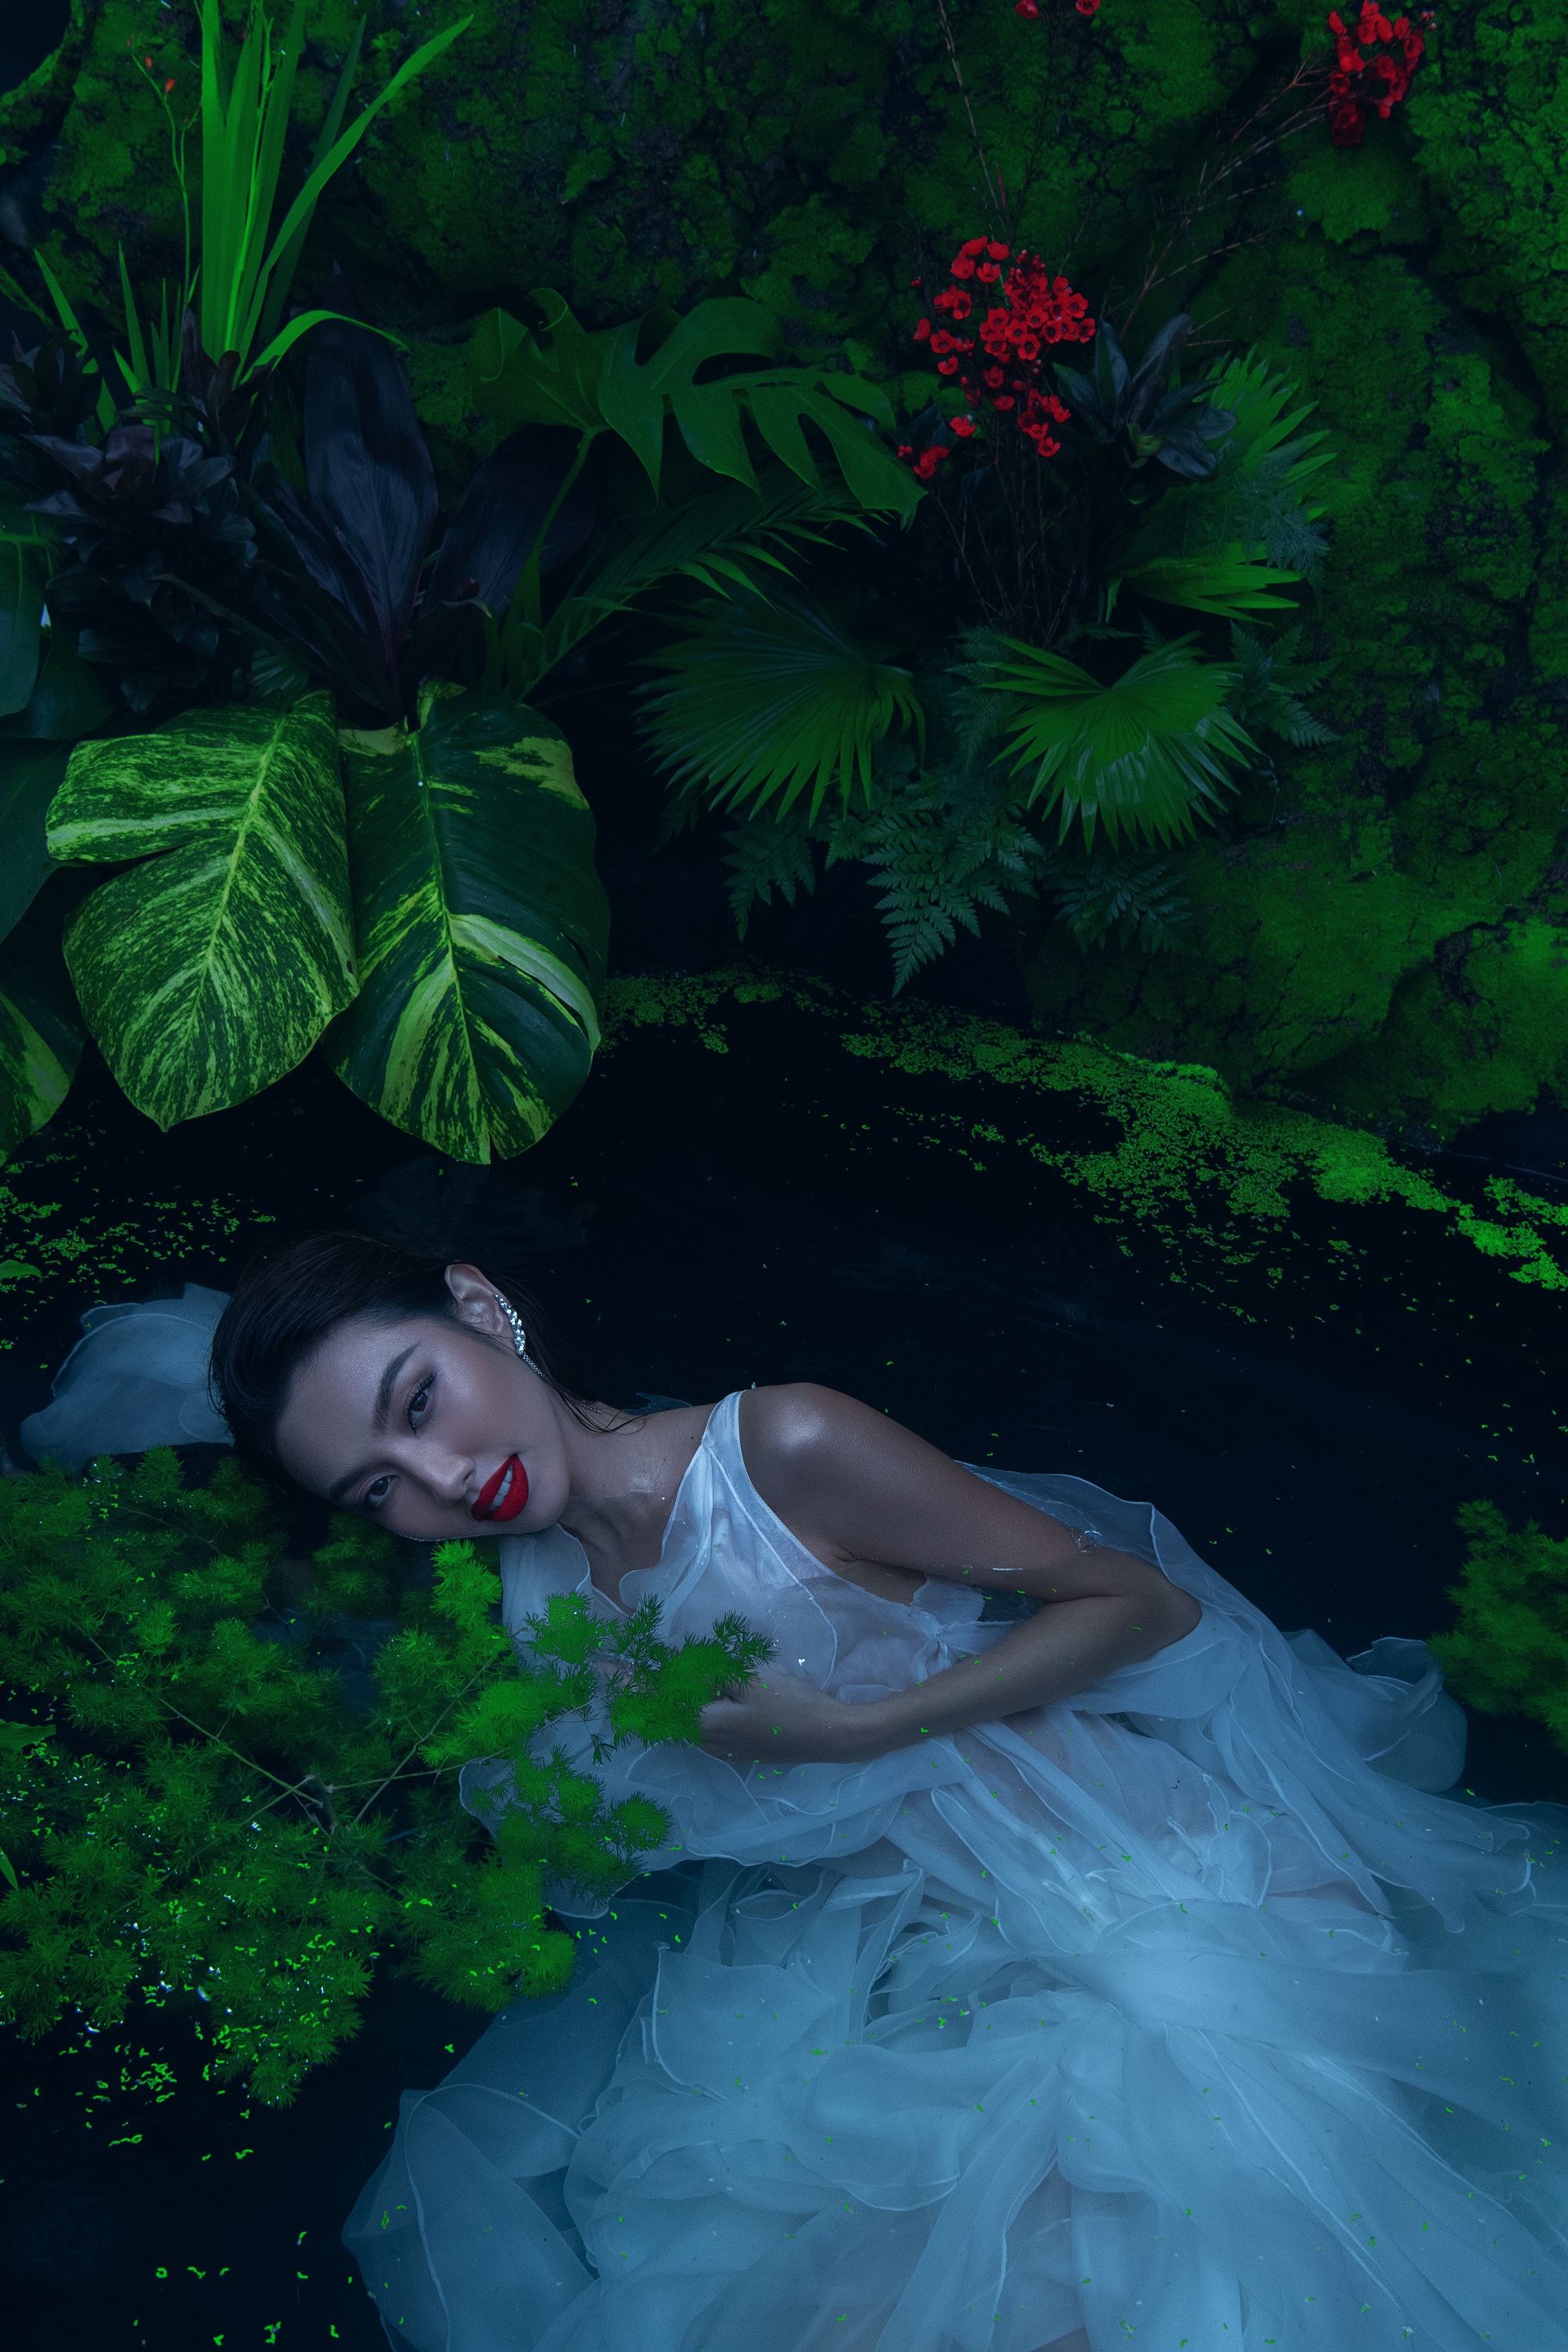 Hoa hậu Thùy Tiên “trình làng” bộ ảnh đắm mình trong hồ nước, không quên hé lộ lịch trình sắp tới - ảnh 3